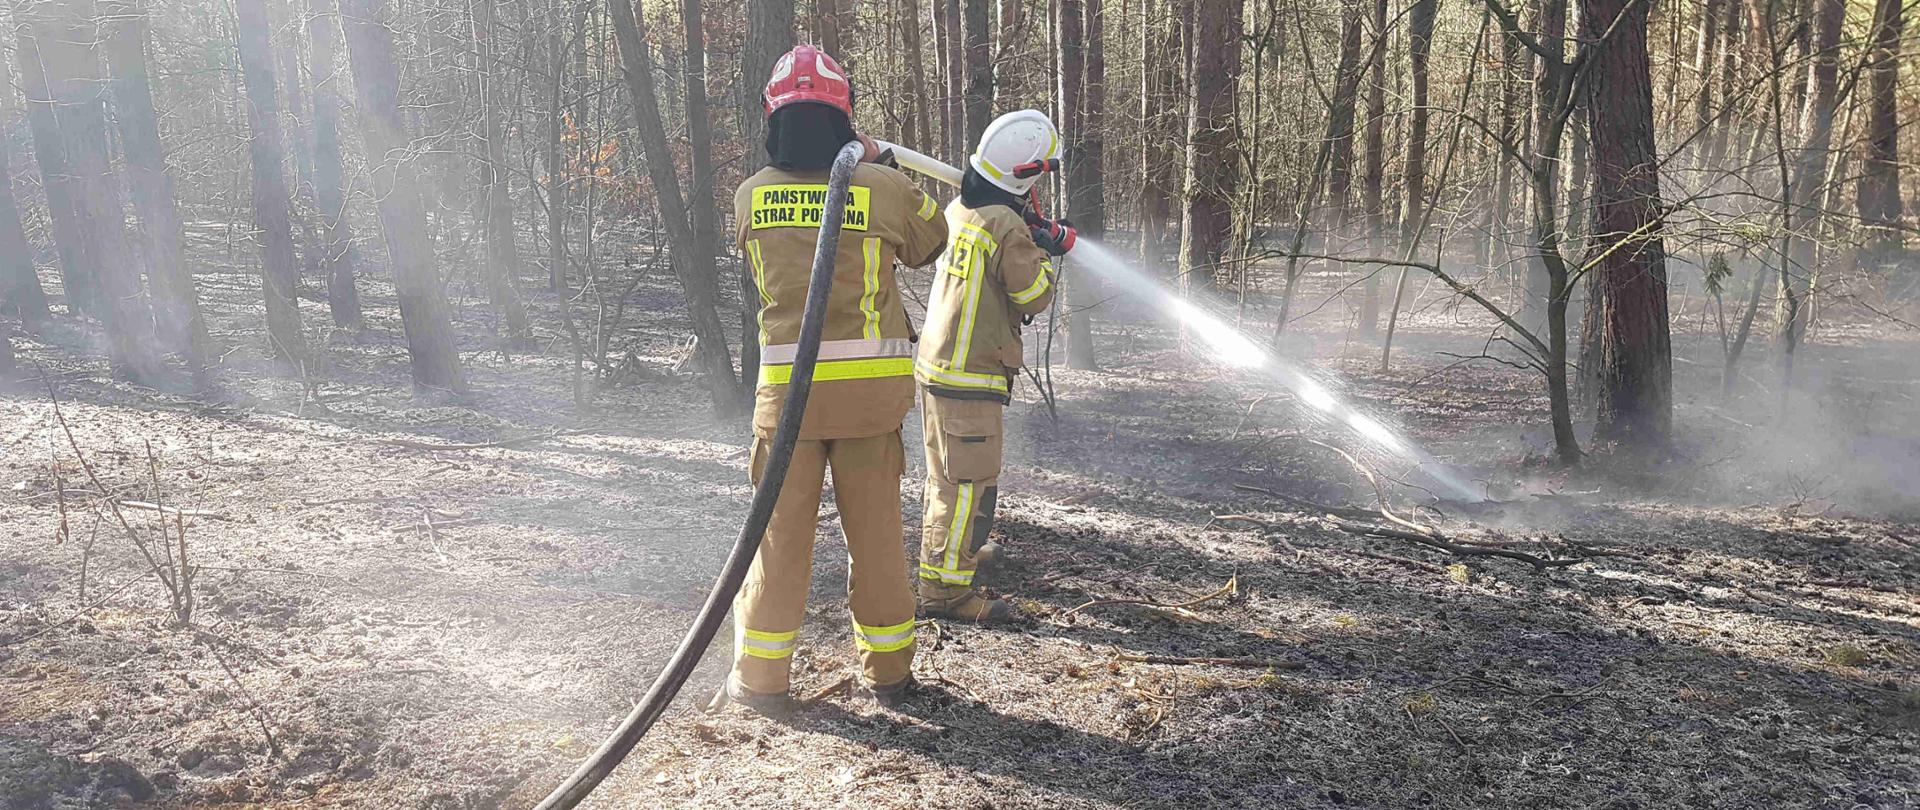 Zdjęcie zrobione w dzień. Na zdjęciu jest strażak PSP oraz OSP podający jeden prąd wody w natarciu na palące się poszycie leśne, w tle widać spaloną ściółkę którą strażacy przelewają wodą, oraz nadpalone drzewa. 